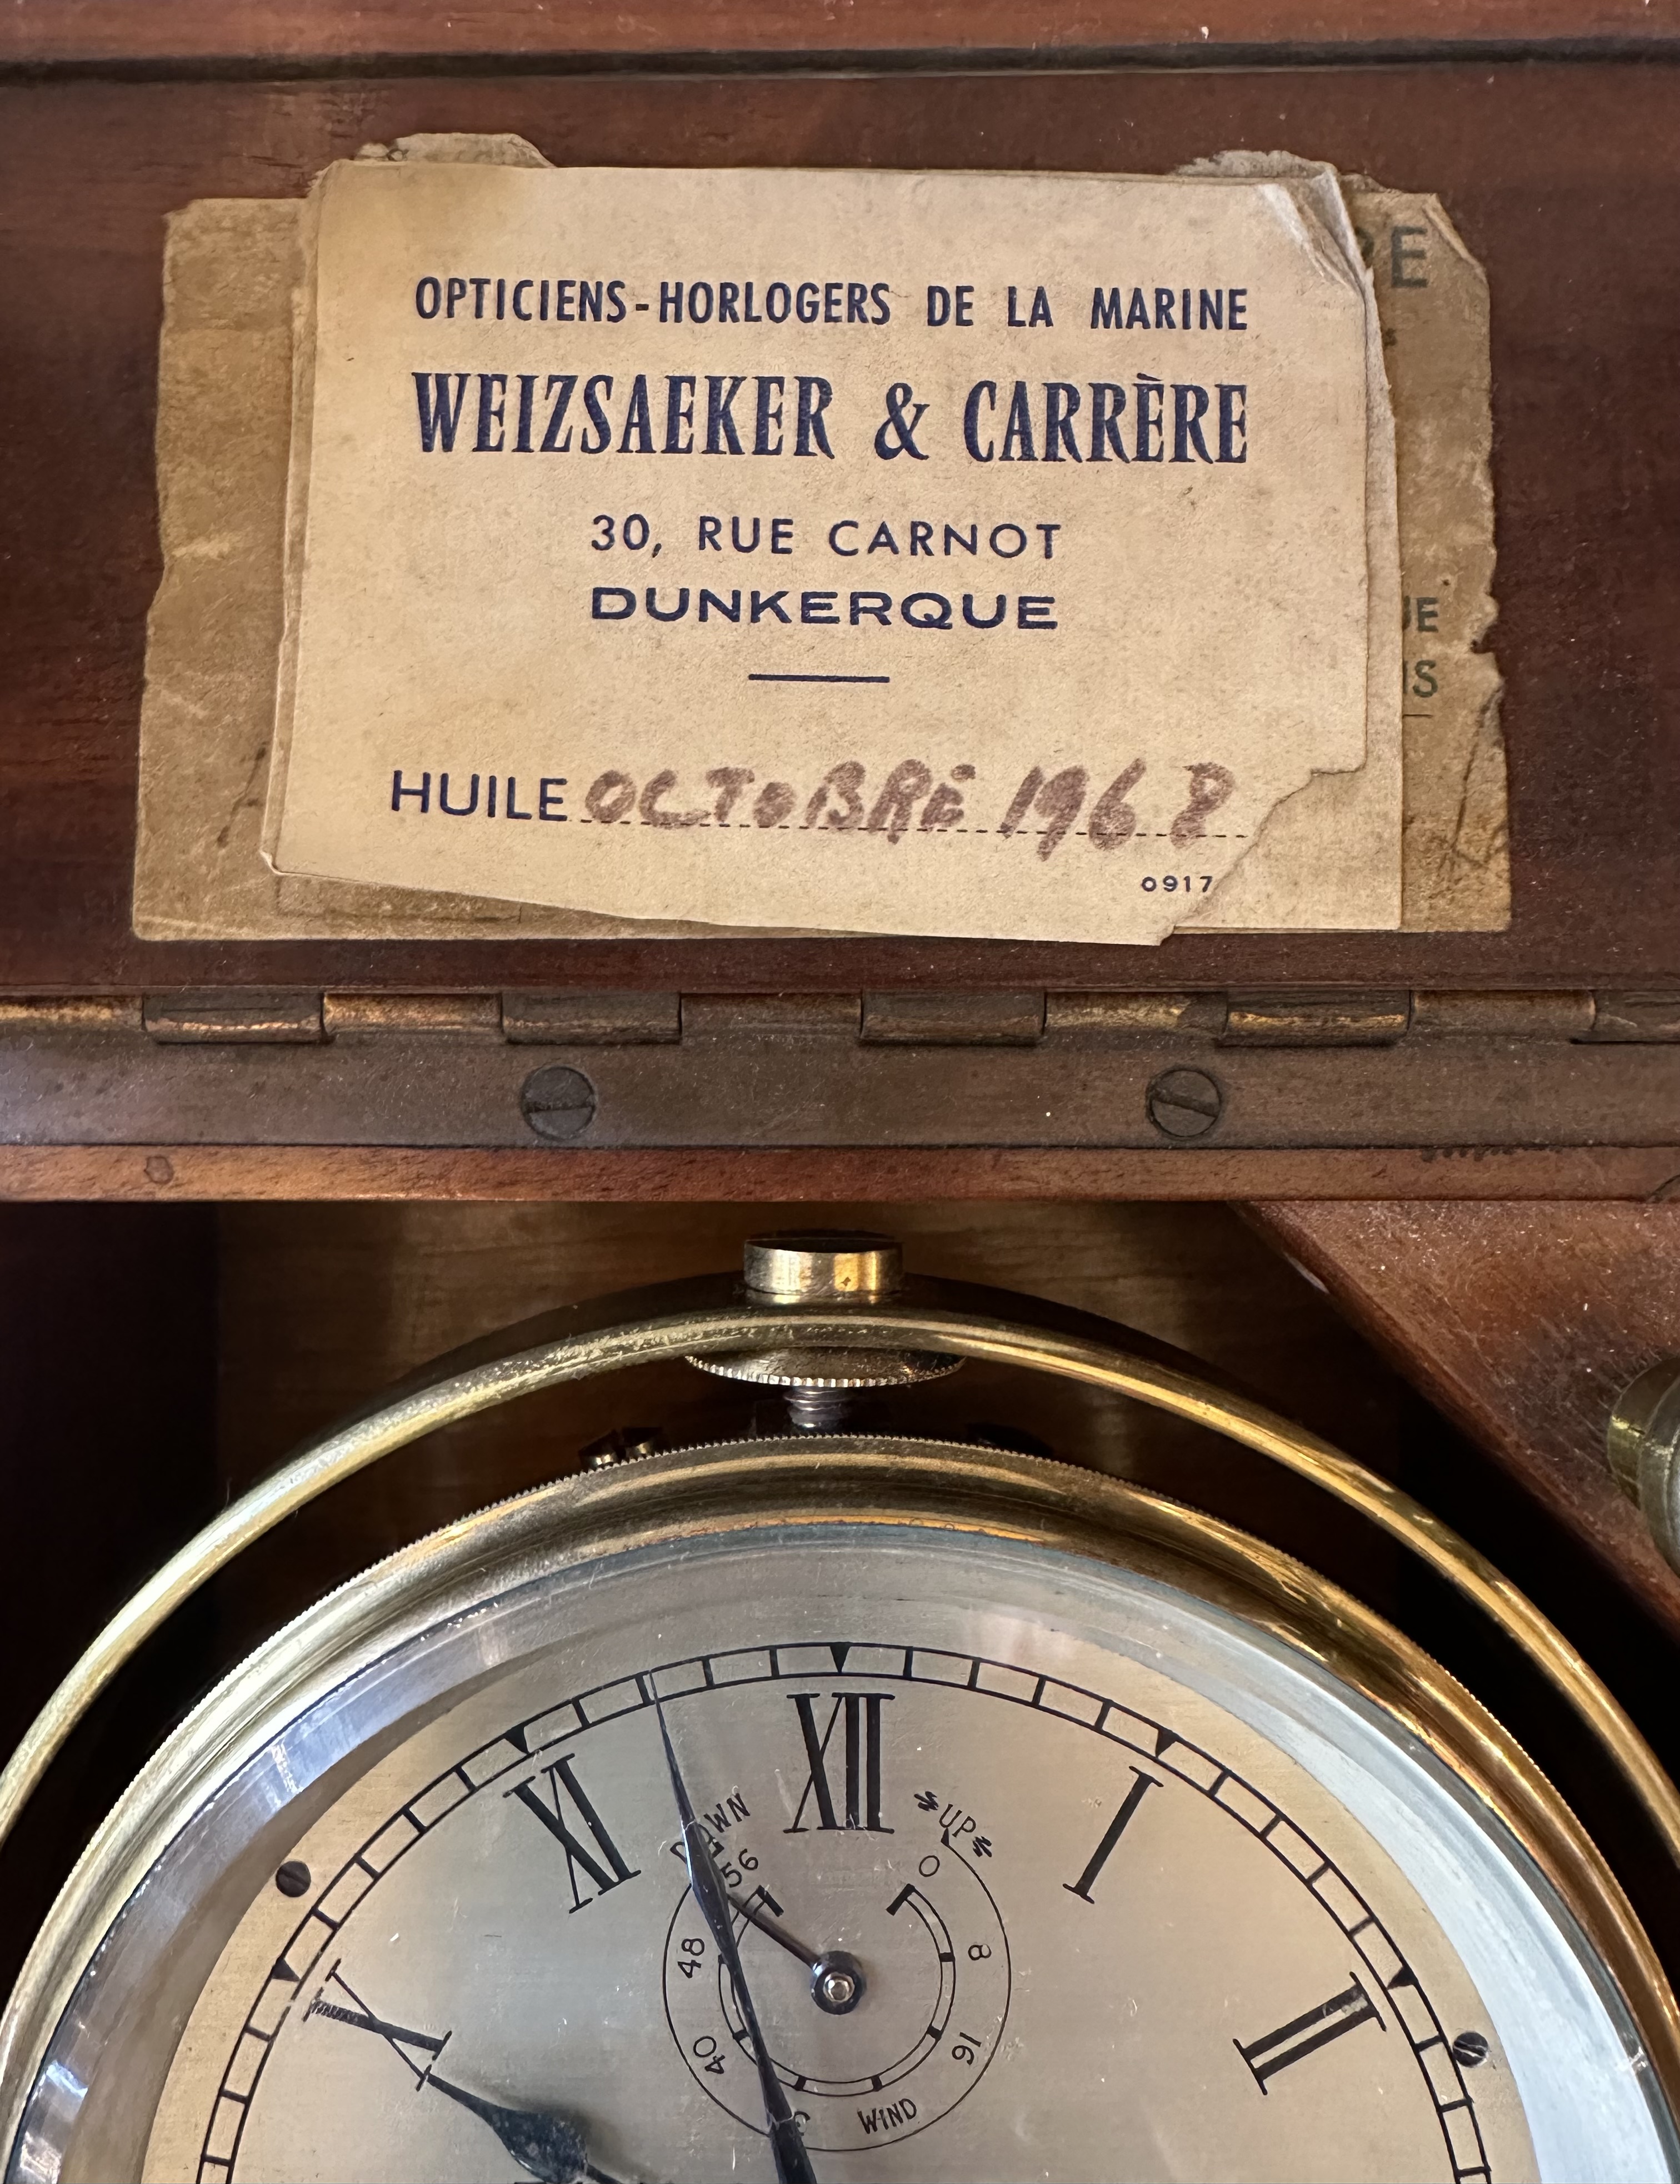 Морской хронометр, Англия, фирма "Томас Мерсер", кон. XIX века 